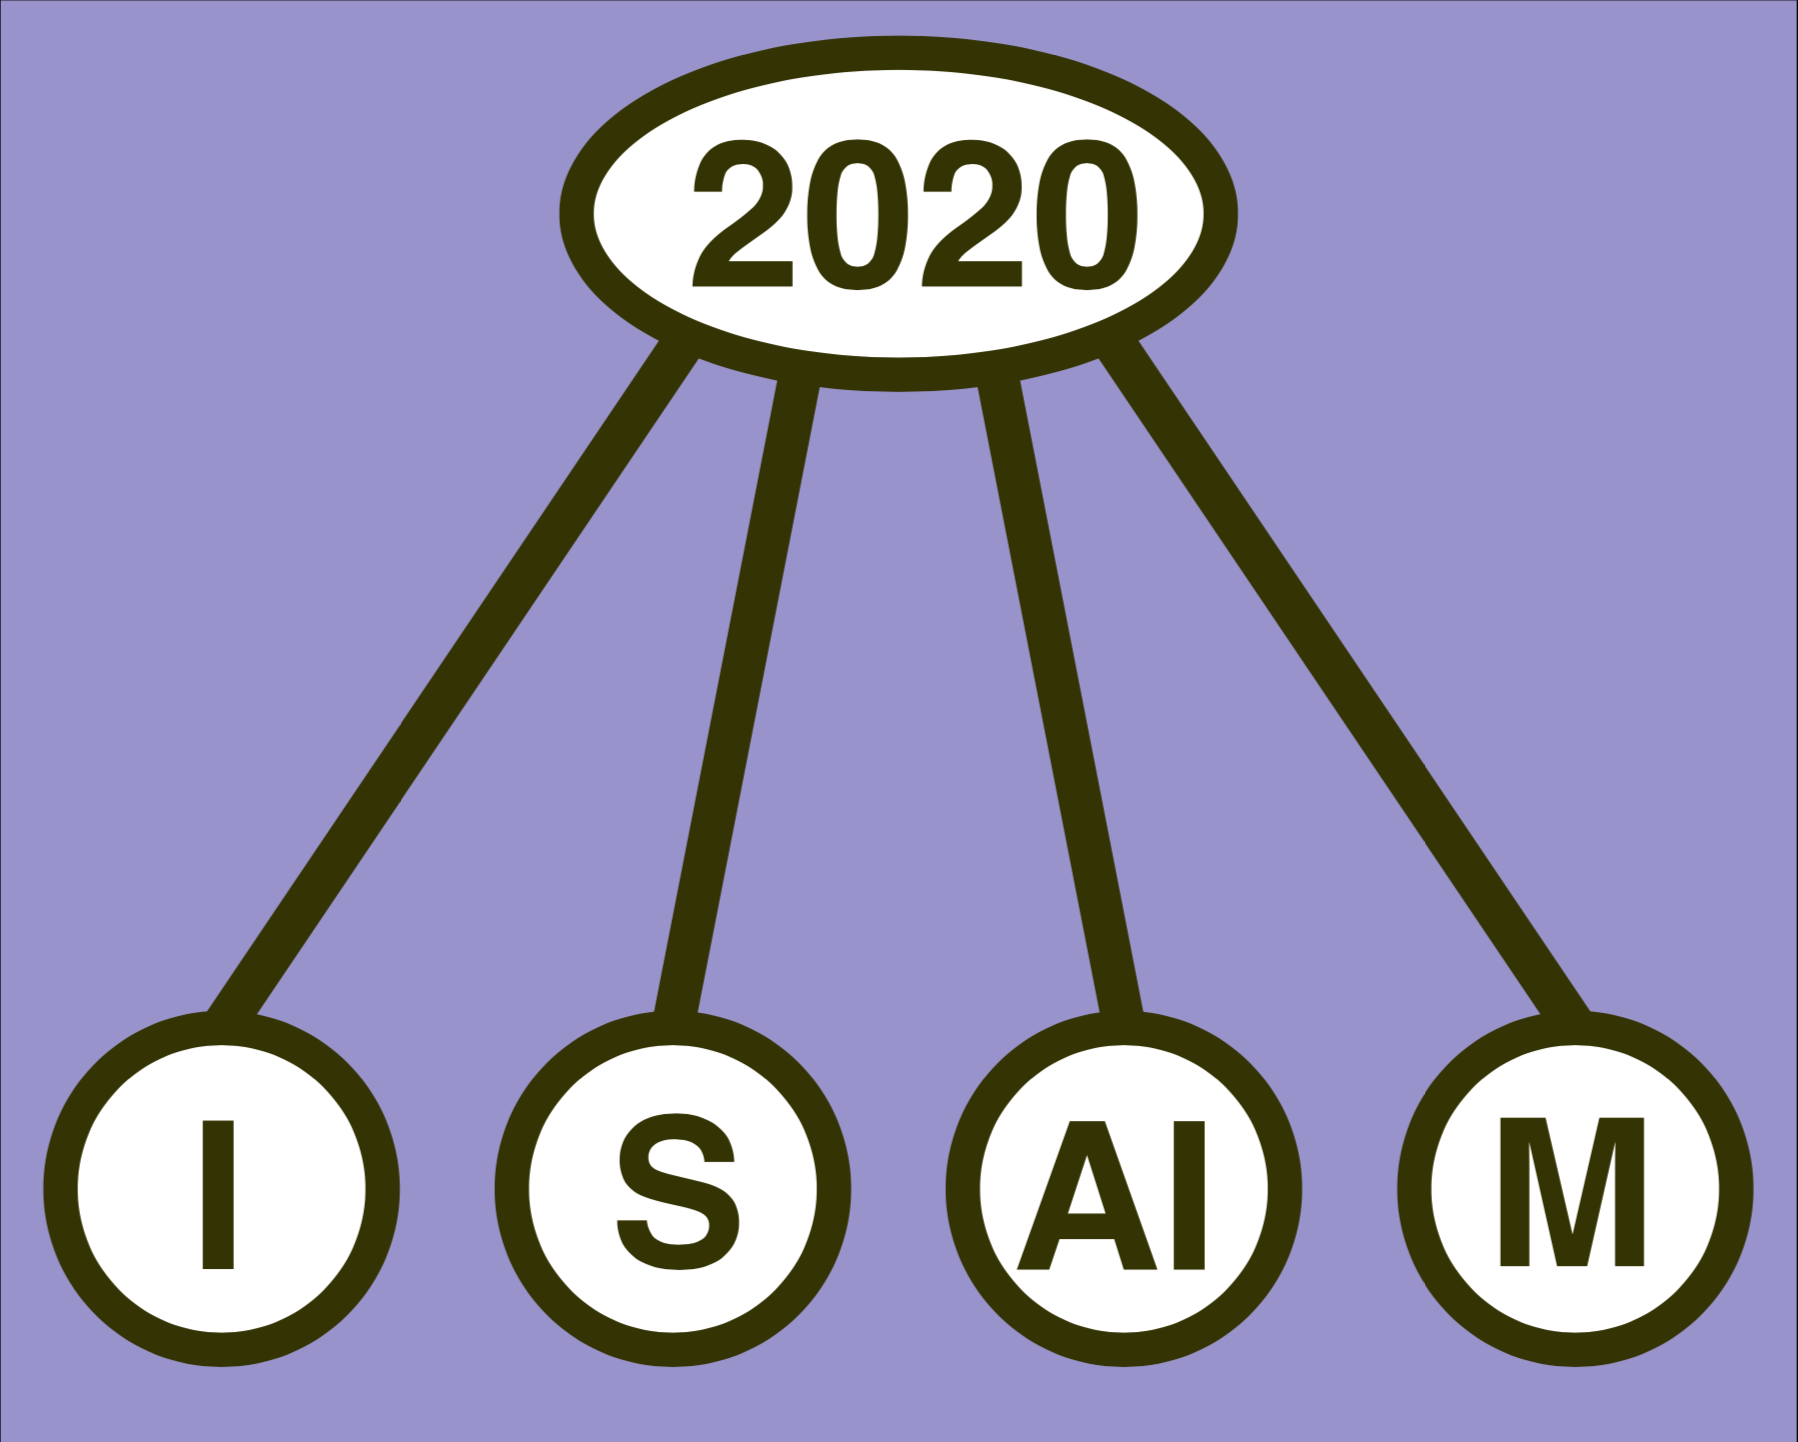 ISAIM 2020 Logo